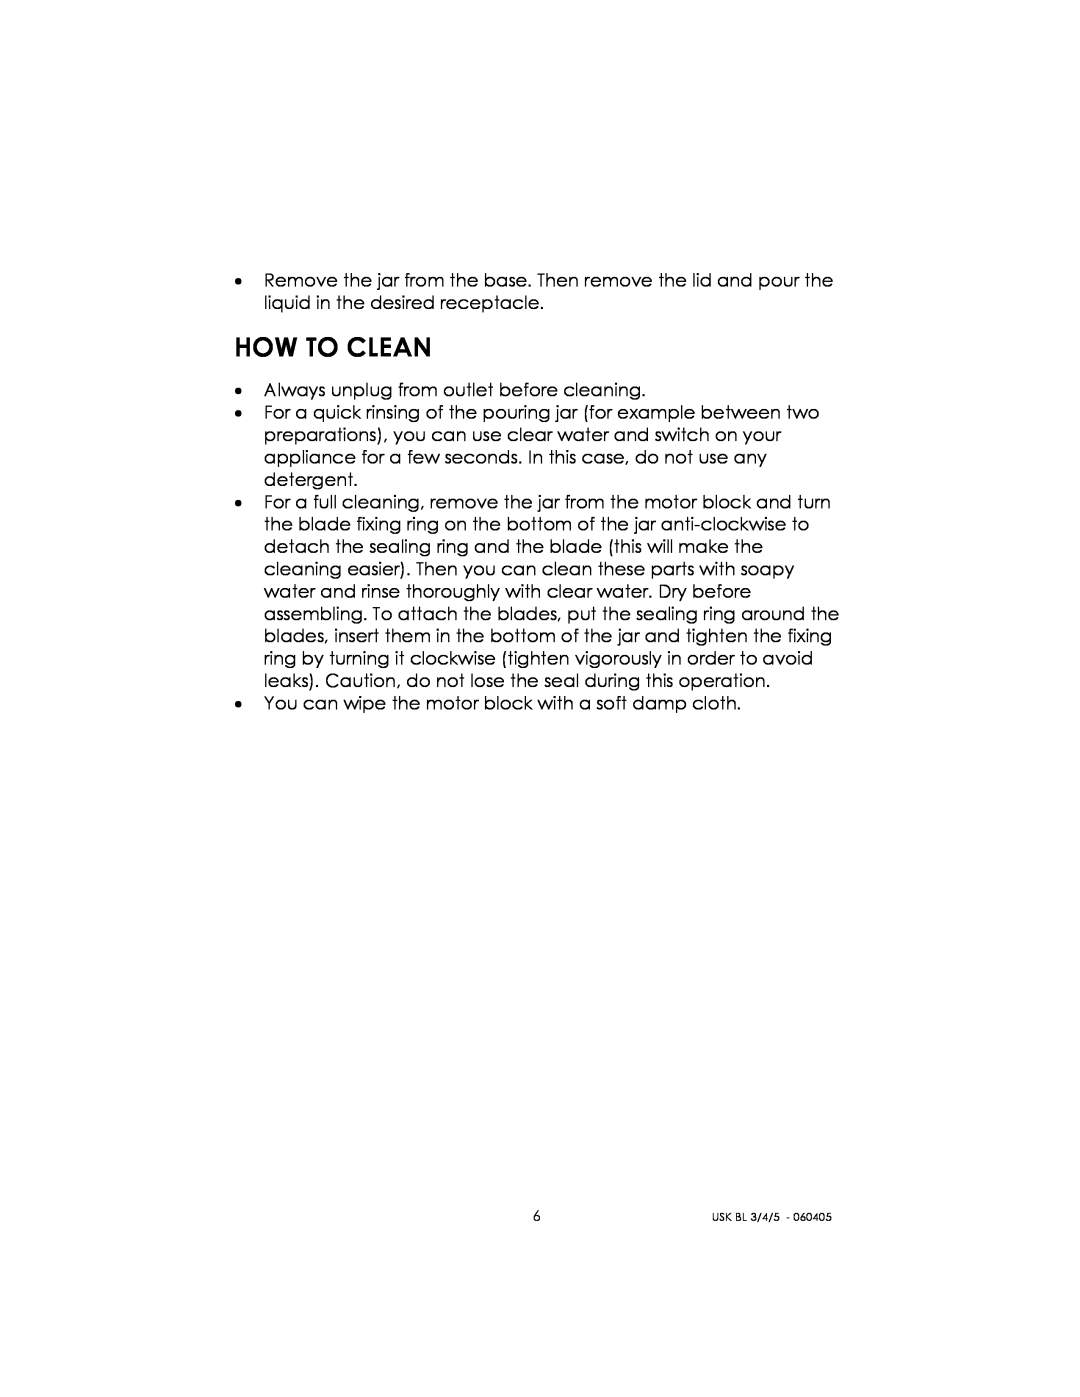 Kalorik USK BL 3/4/5 manual How To Clean 